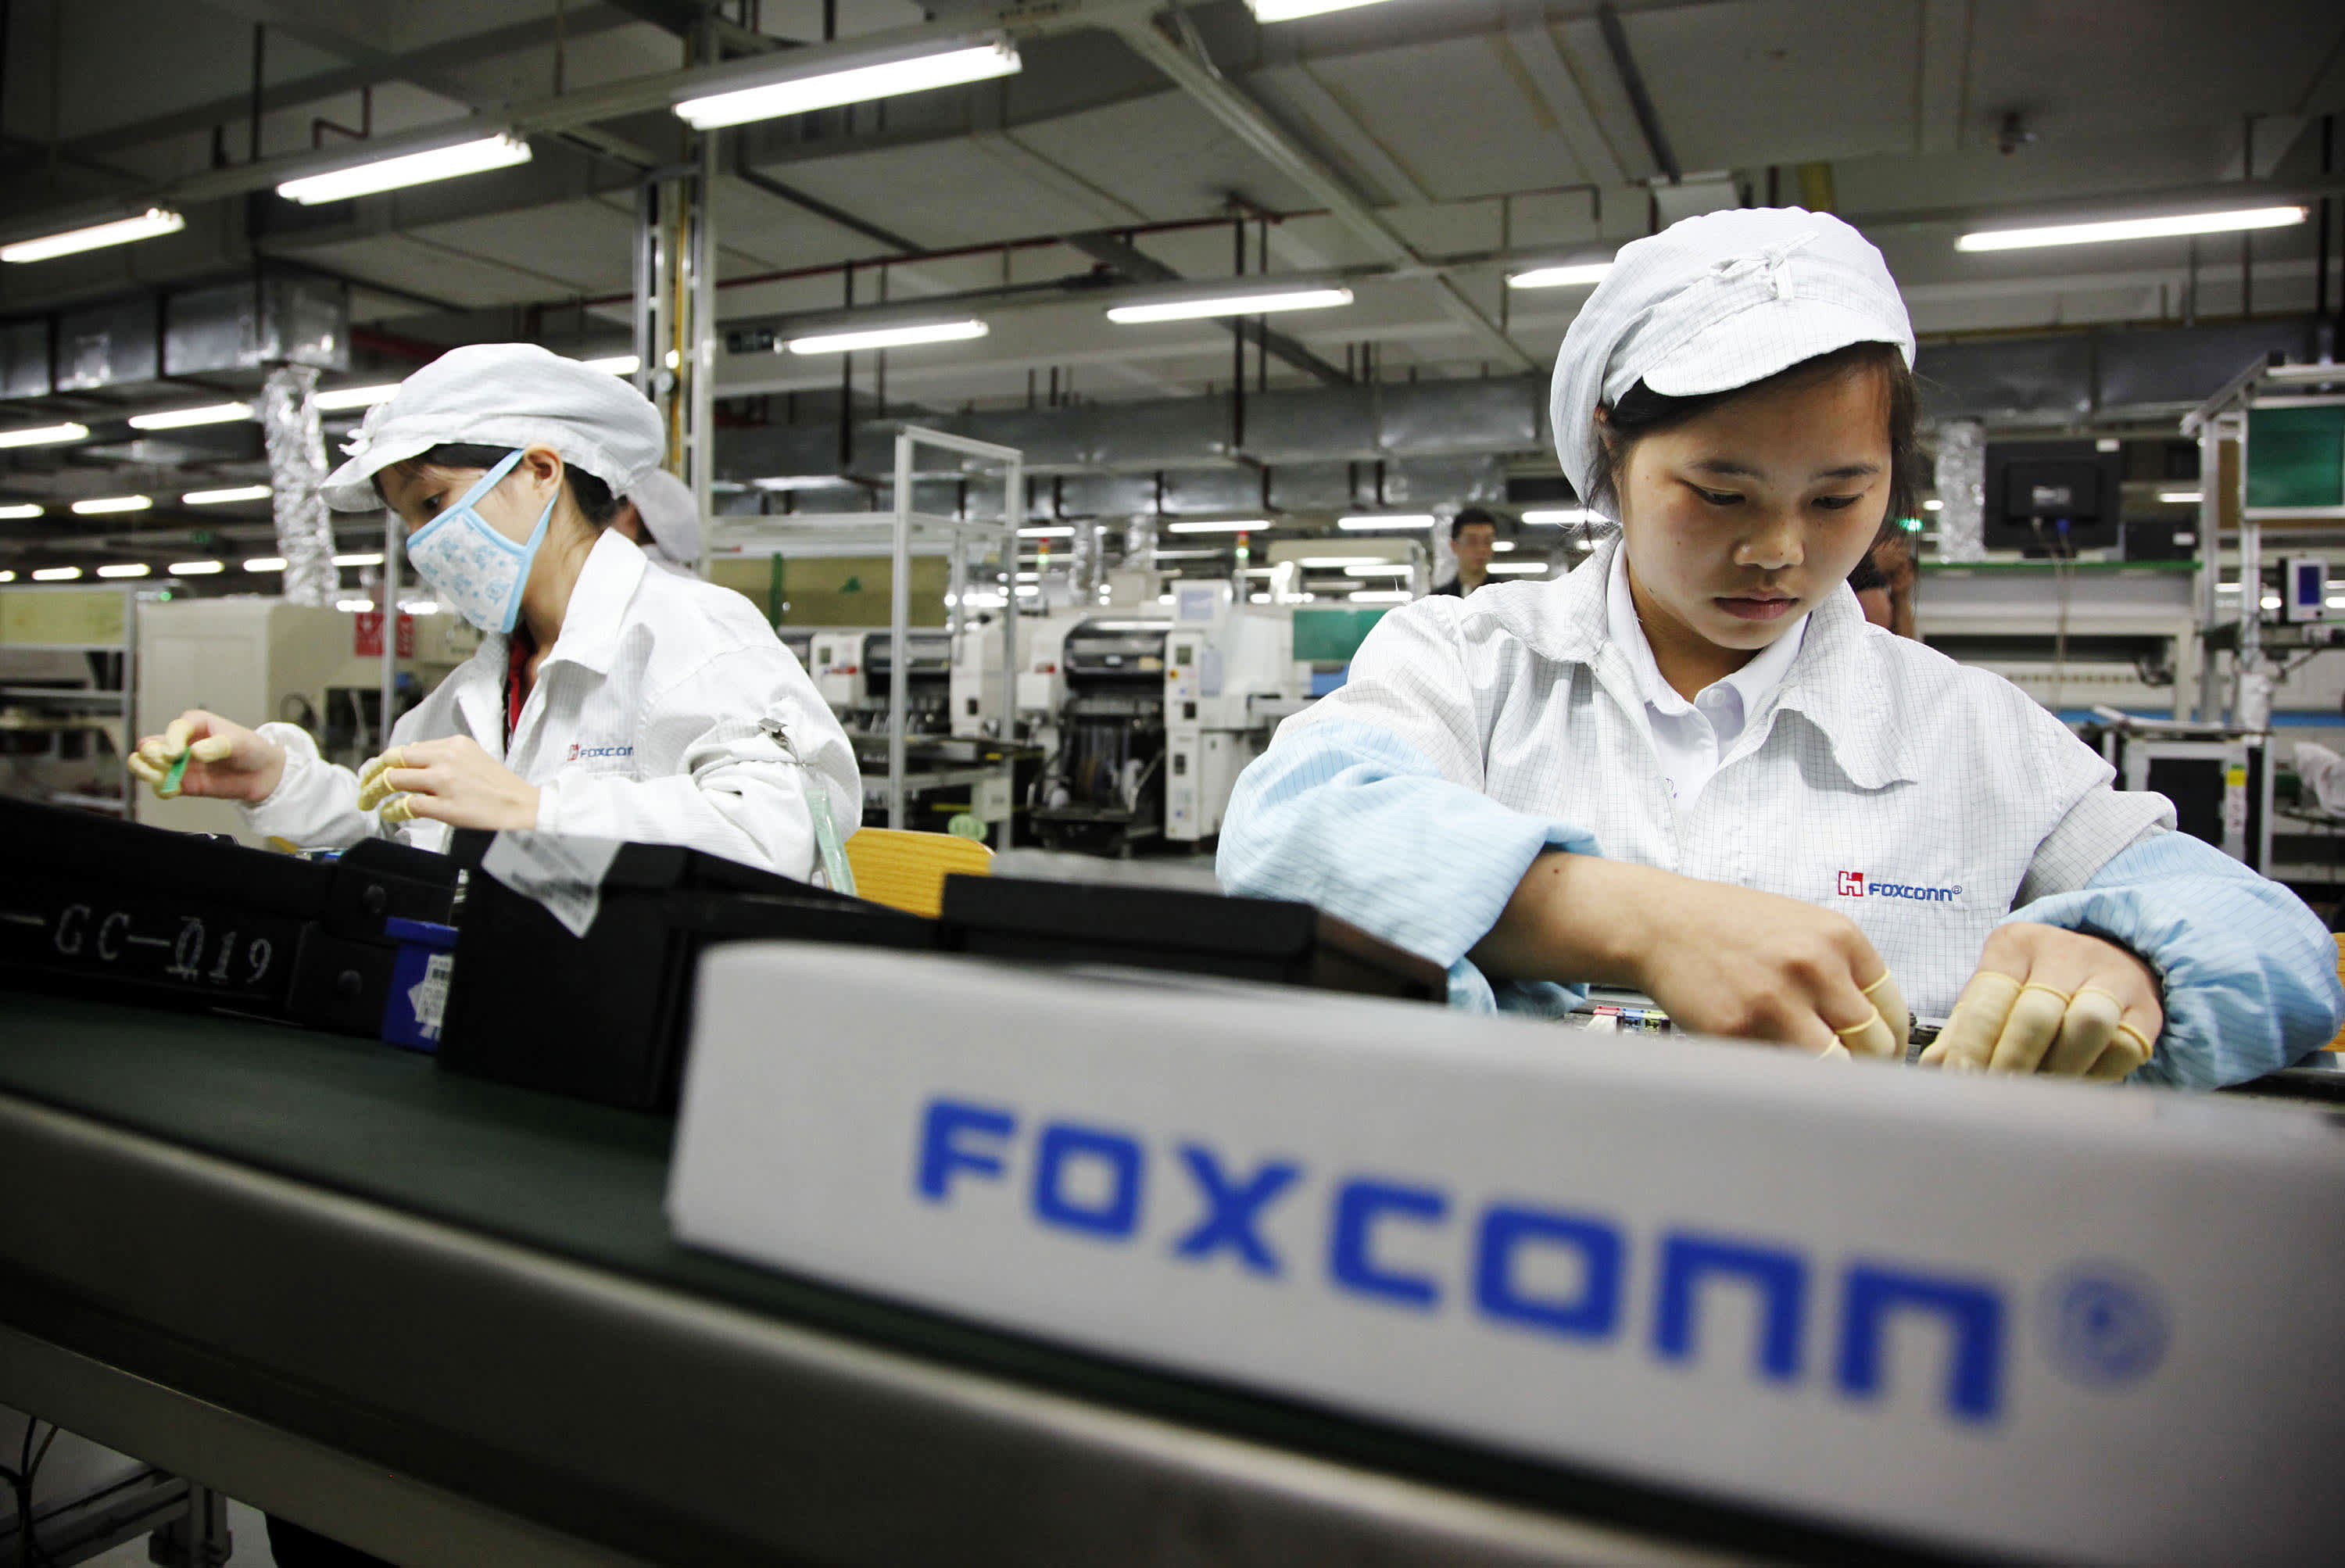 Miles de empleados despedidos de la mayor fábrica de Foxconn, los envíos de iPhone están amenazados